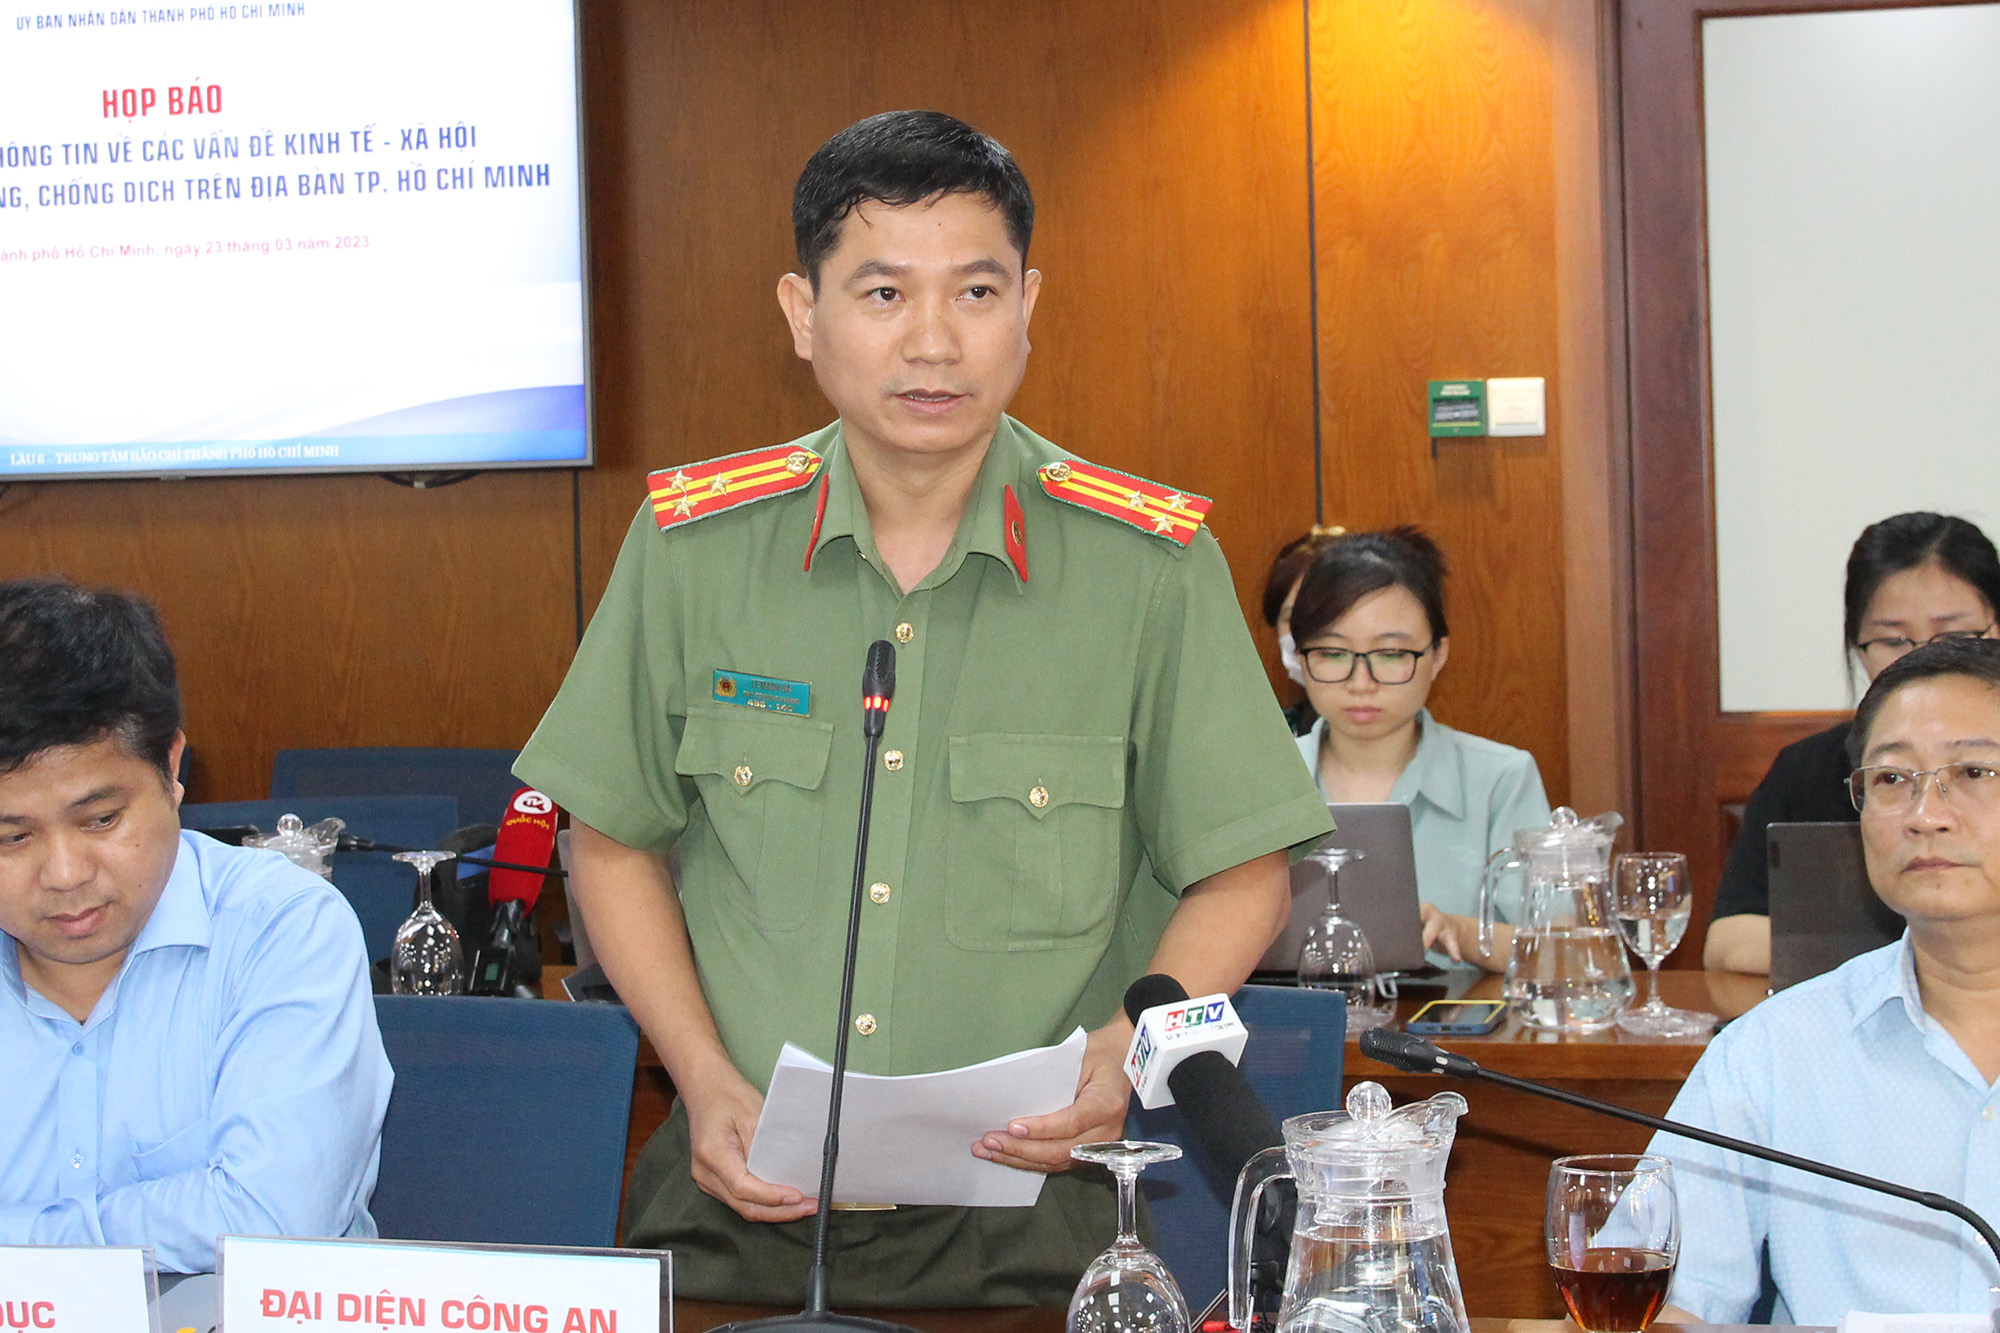 Thượng tá Lê Mạnh Hà – Phó Trưởng Phòng Tham mưu Công an TP. Hồ Chí Minh tại buổi họp báo (Ảnh: H.Hào).